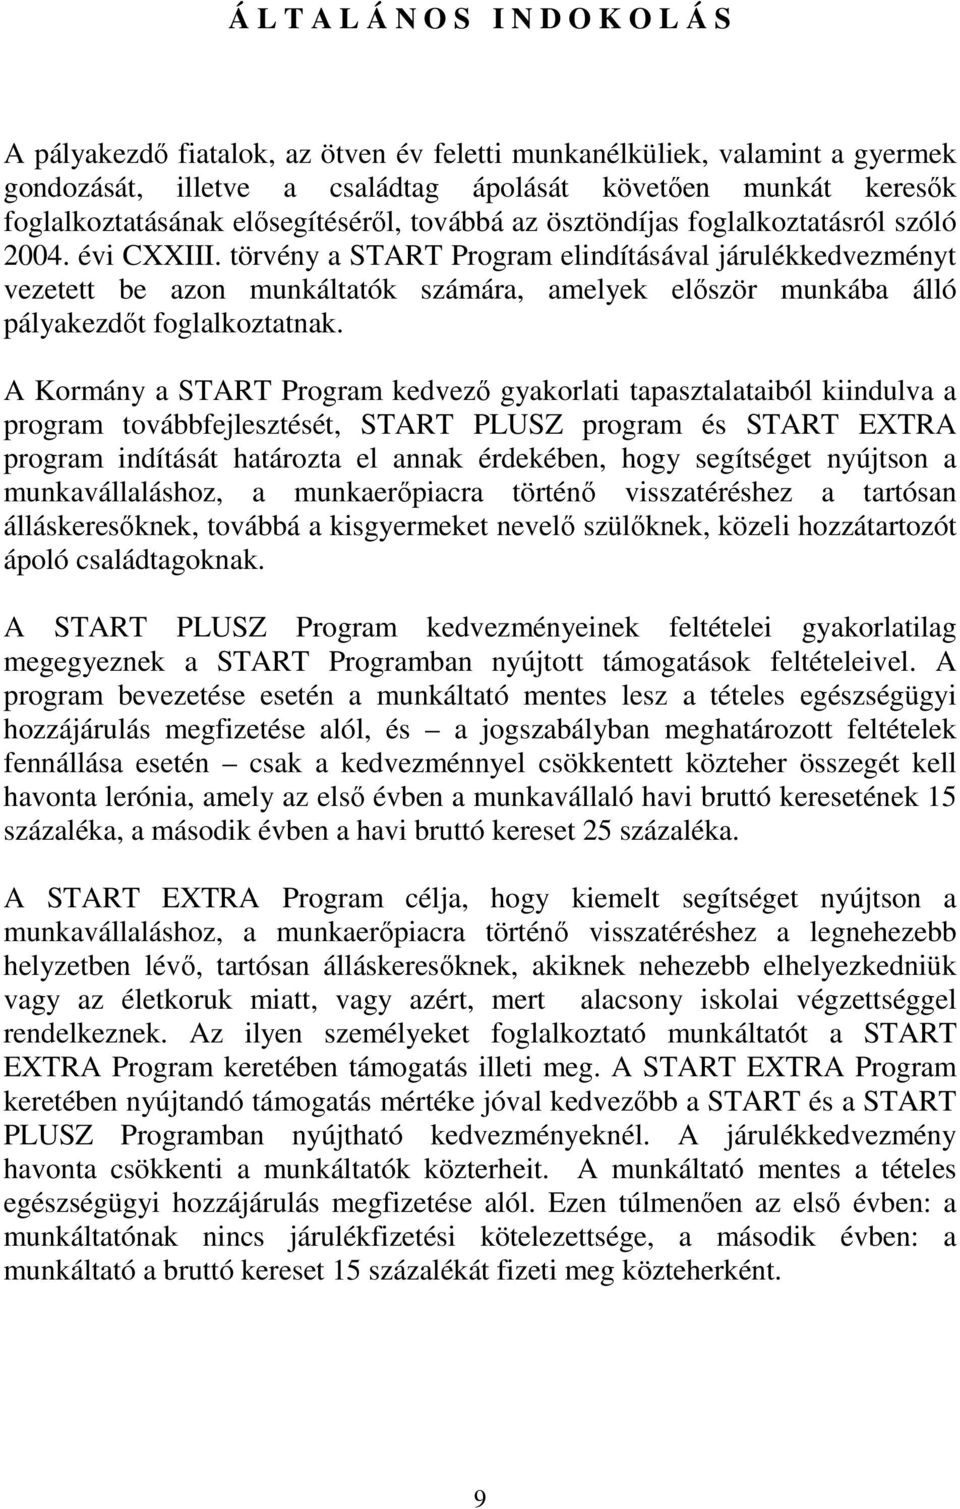 törvény a START Program elindításával járulékkedvezményt vezetett be azon munkáltatók számára, amelyek elıször munkába álló pályakezdıt foglalkoztatnak.